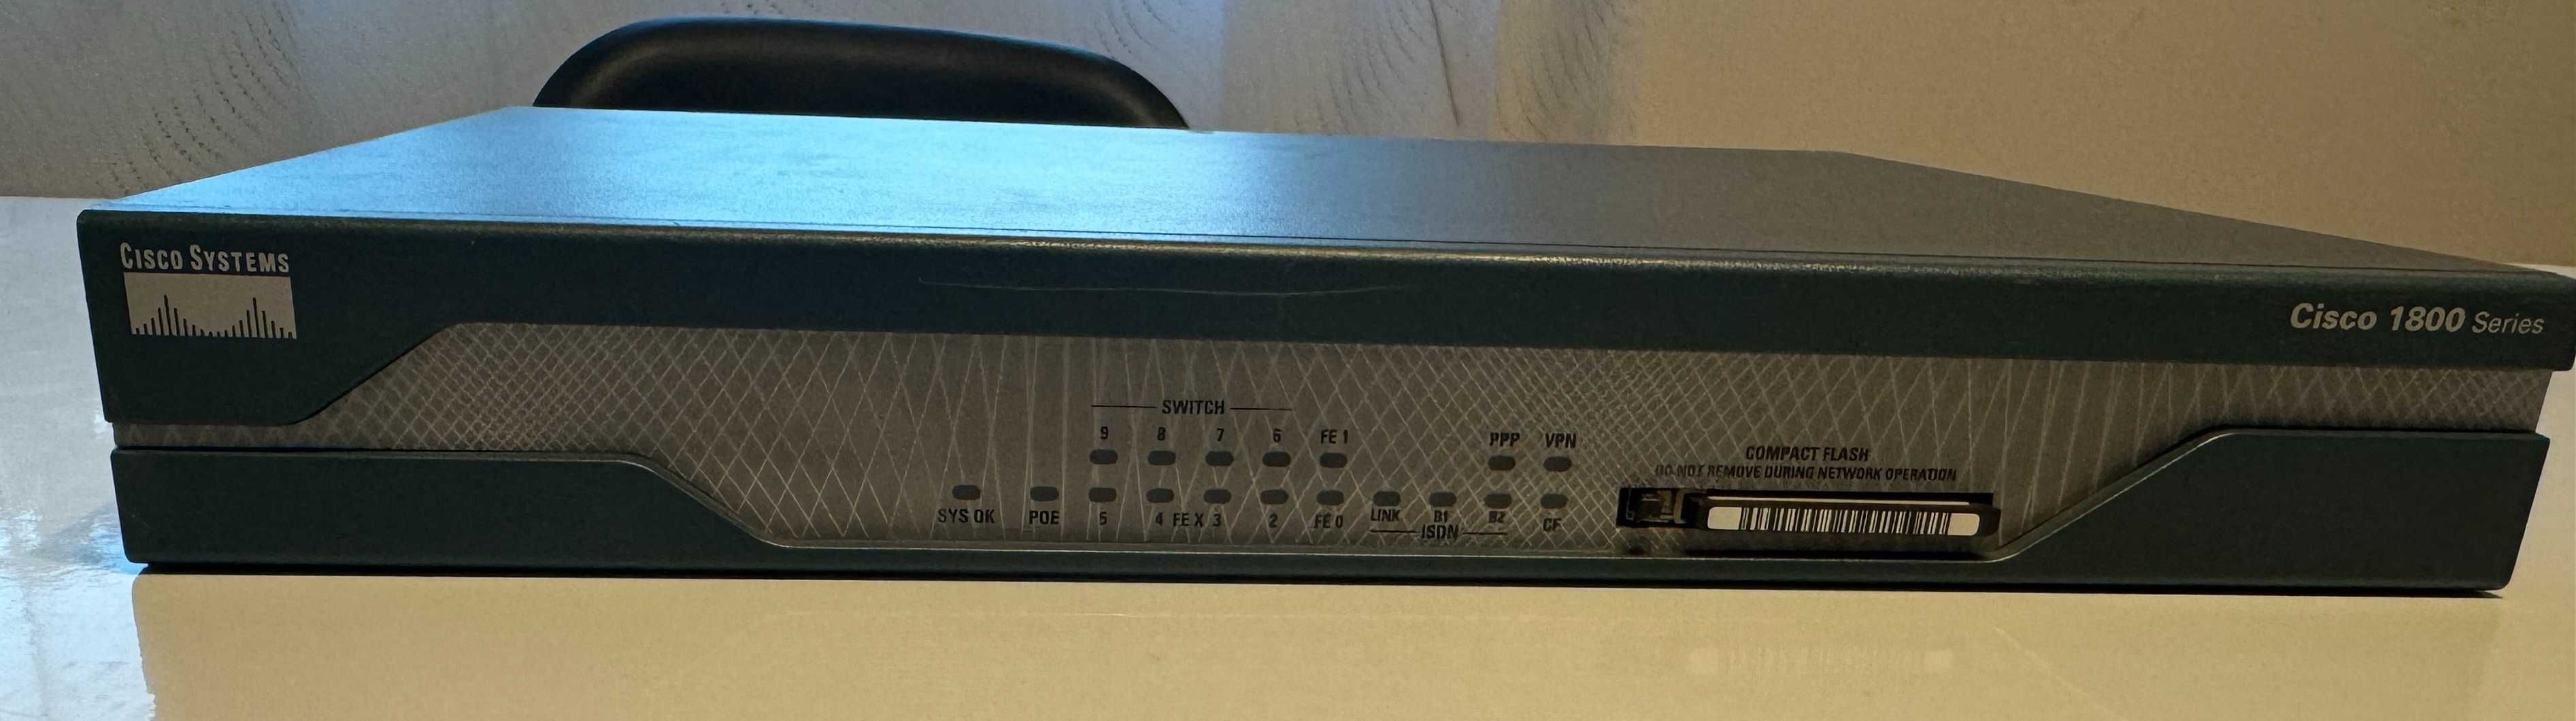 Cisco Series 1800